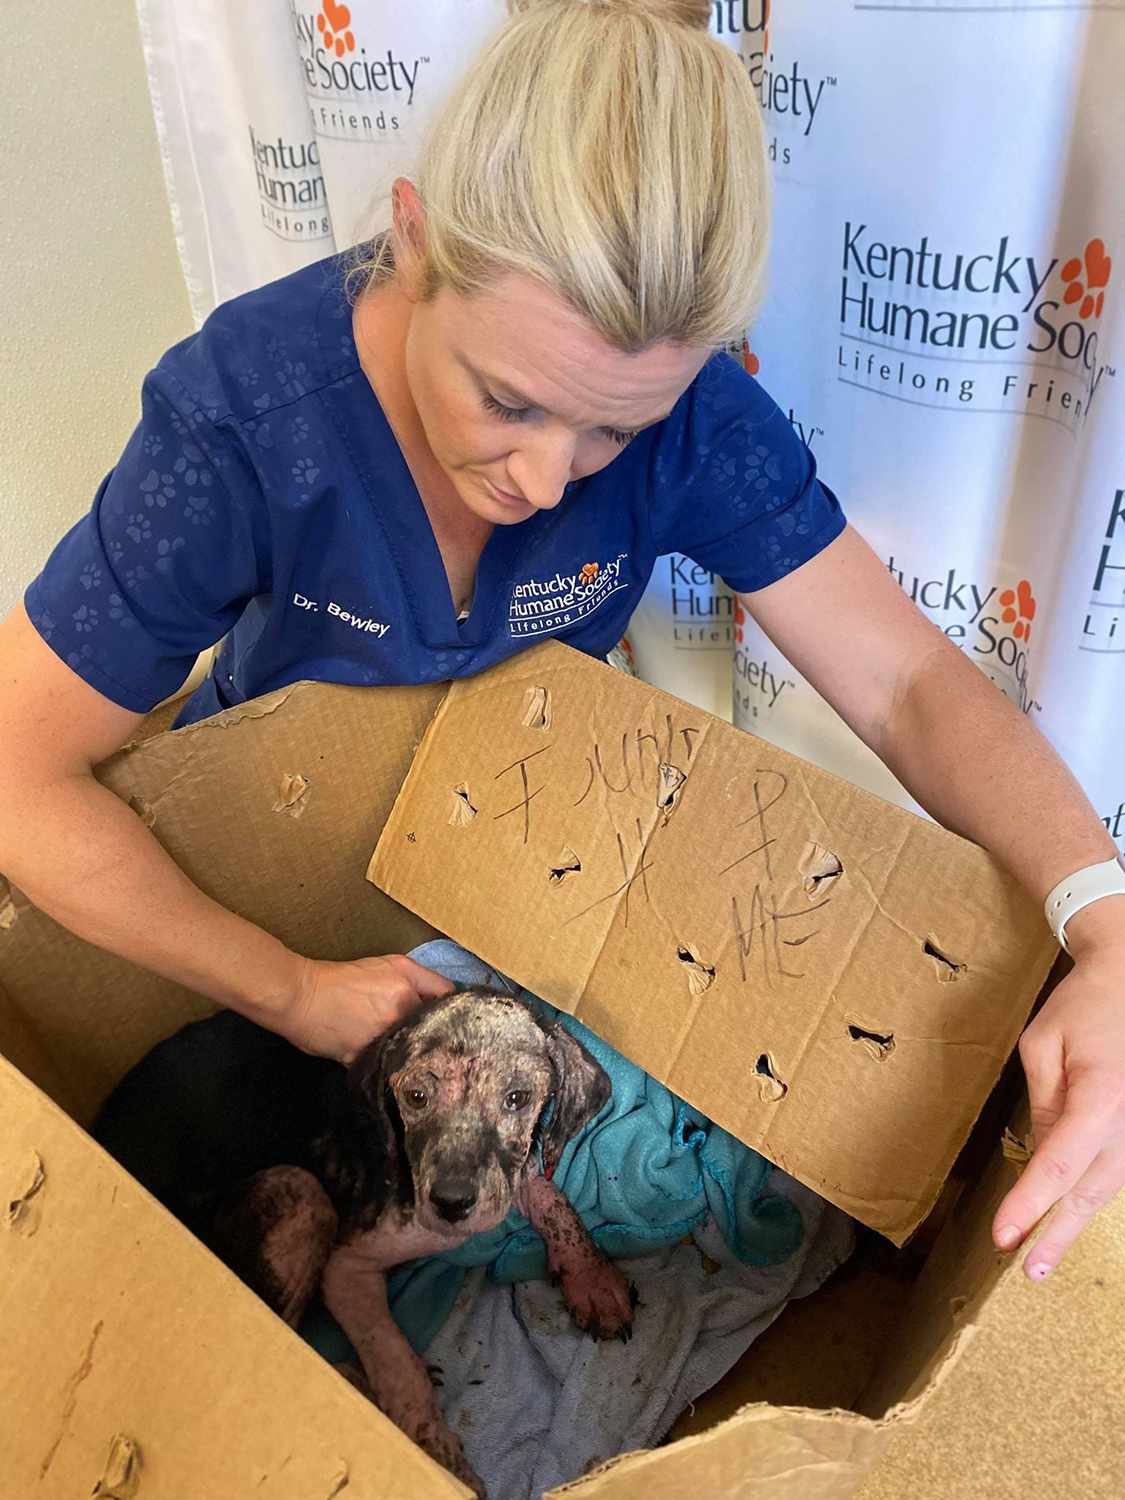 Kentucky Shelter znajduje wychudzonego szczeniaka pozostawionego w zaklejonym pudełku z napisem „Help Me” na boku